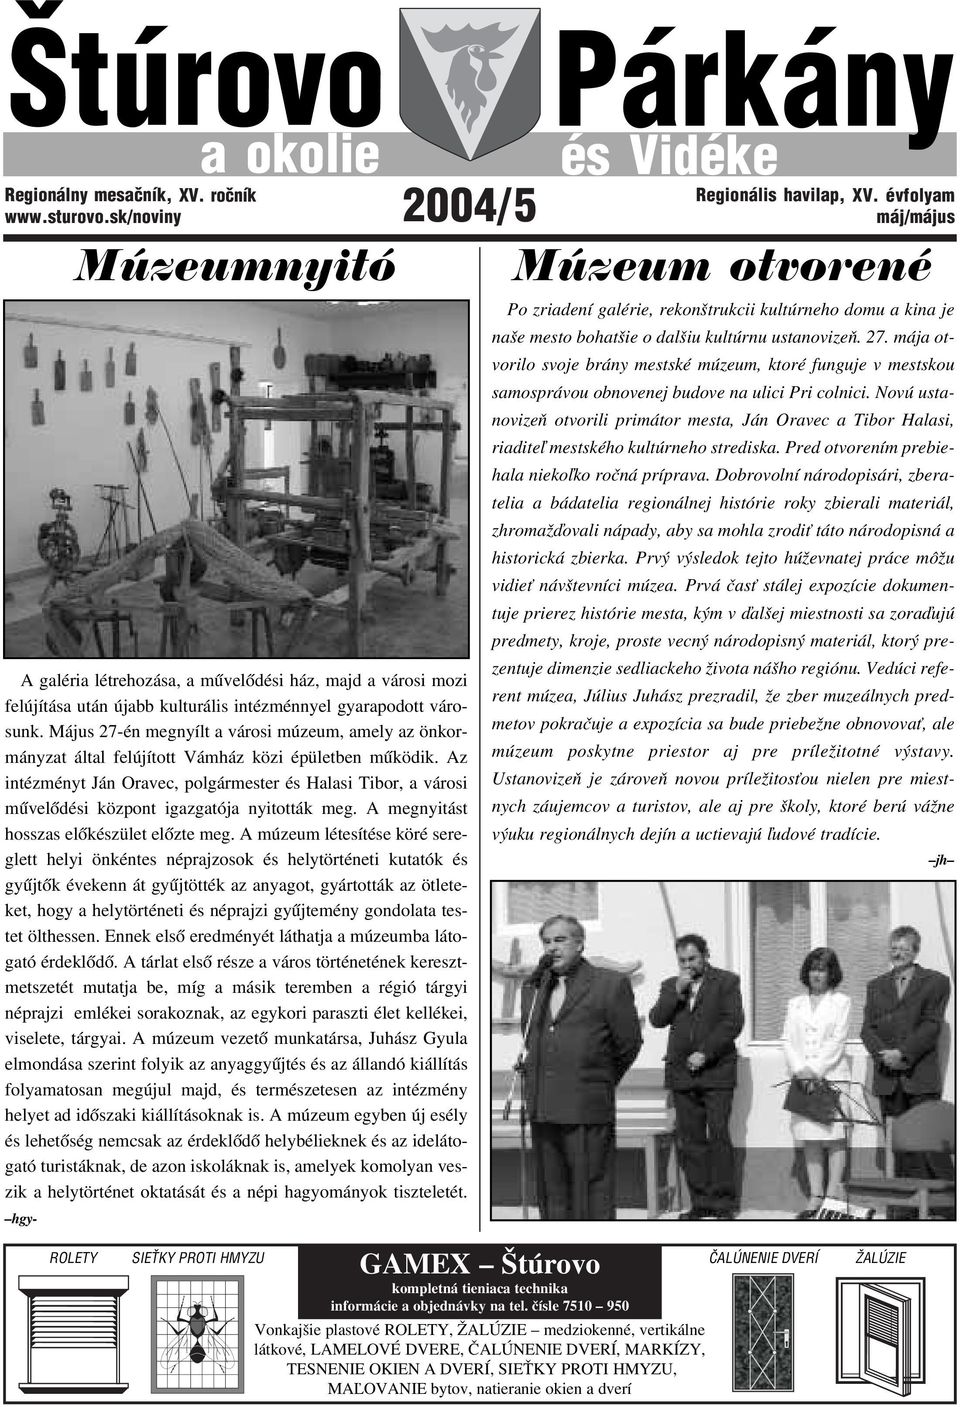 Május 27-én megnyílt a városi múzeum, amely az önkormányzat által felújított Vámház közi épületben működik.